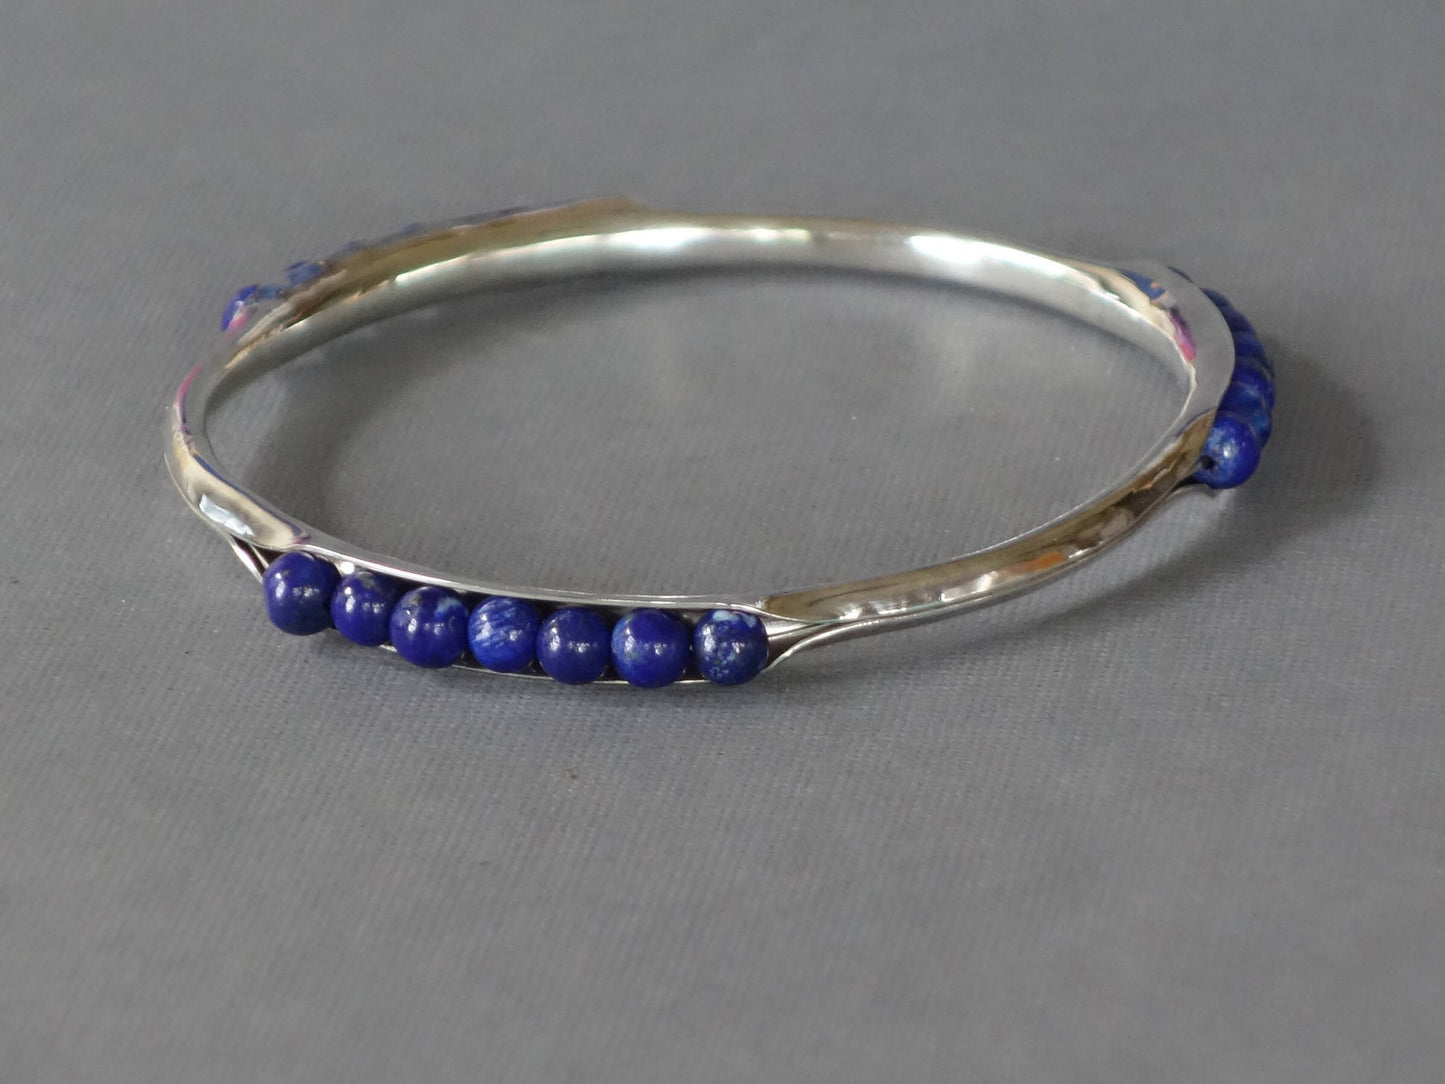 Lapis Bracelet, Anticlastic Lapis Bangle, Metalwork Bangle, Blue Bracelet, Blue Bangle, Anticlastic Bangle